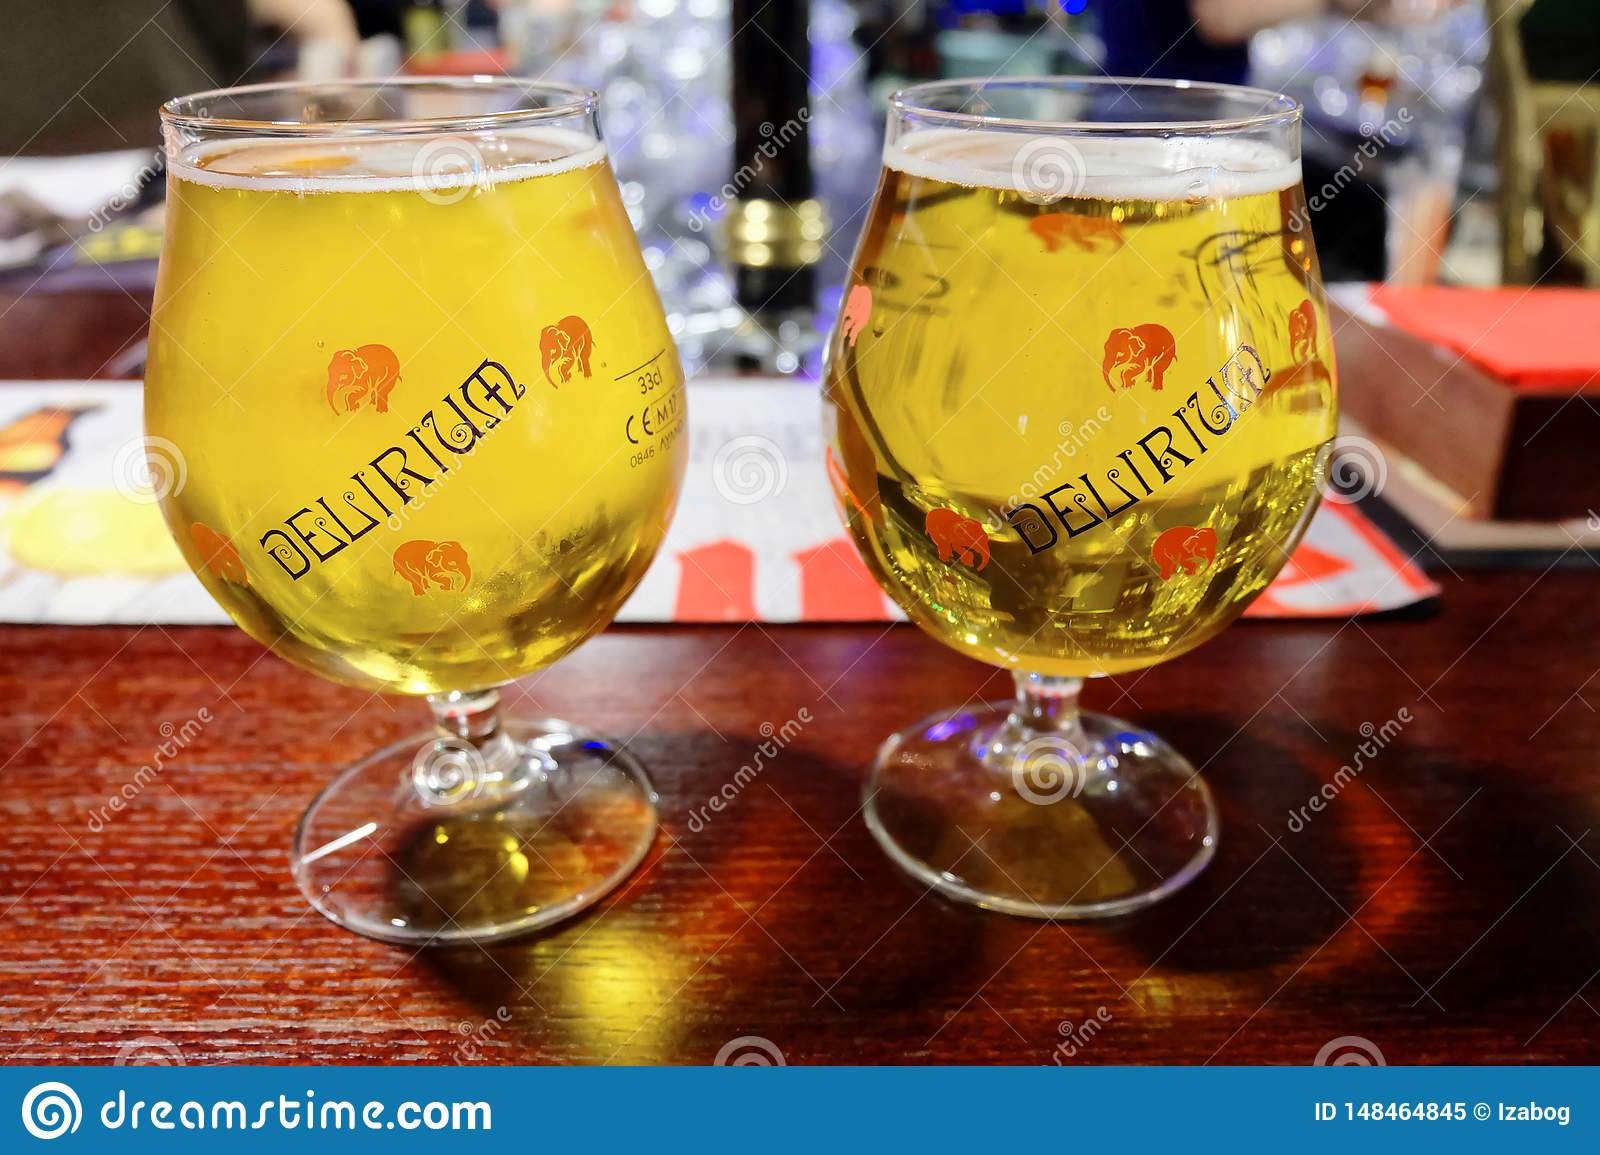 Duelo de titãs entre cervejas belgas